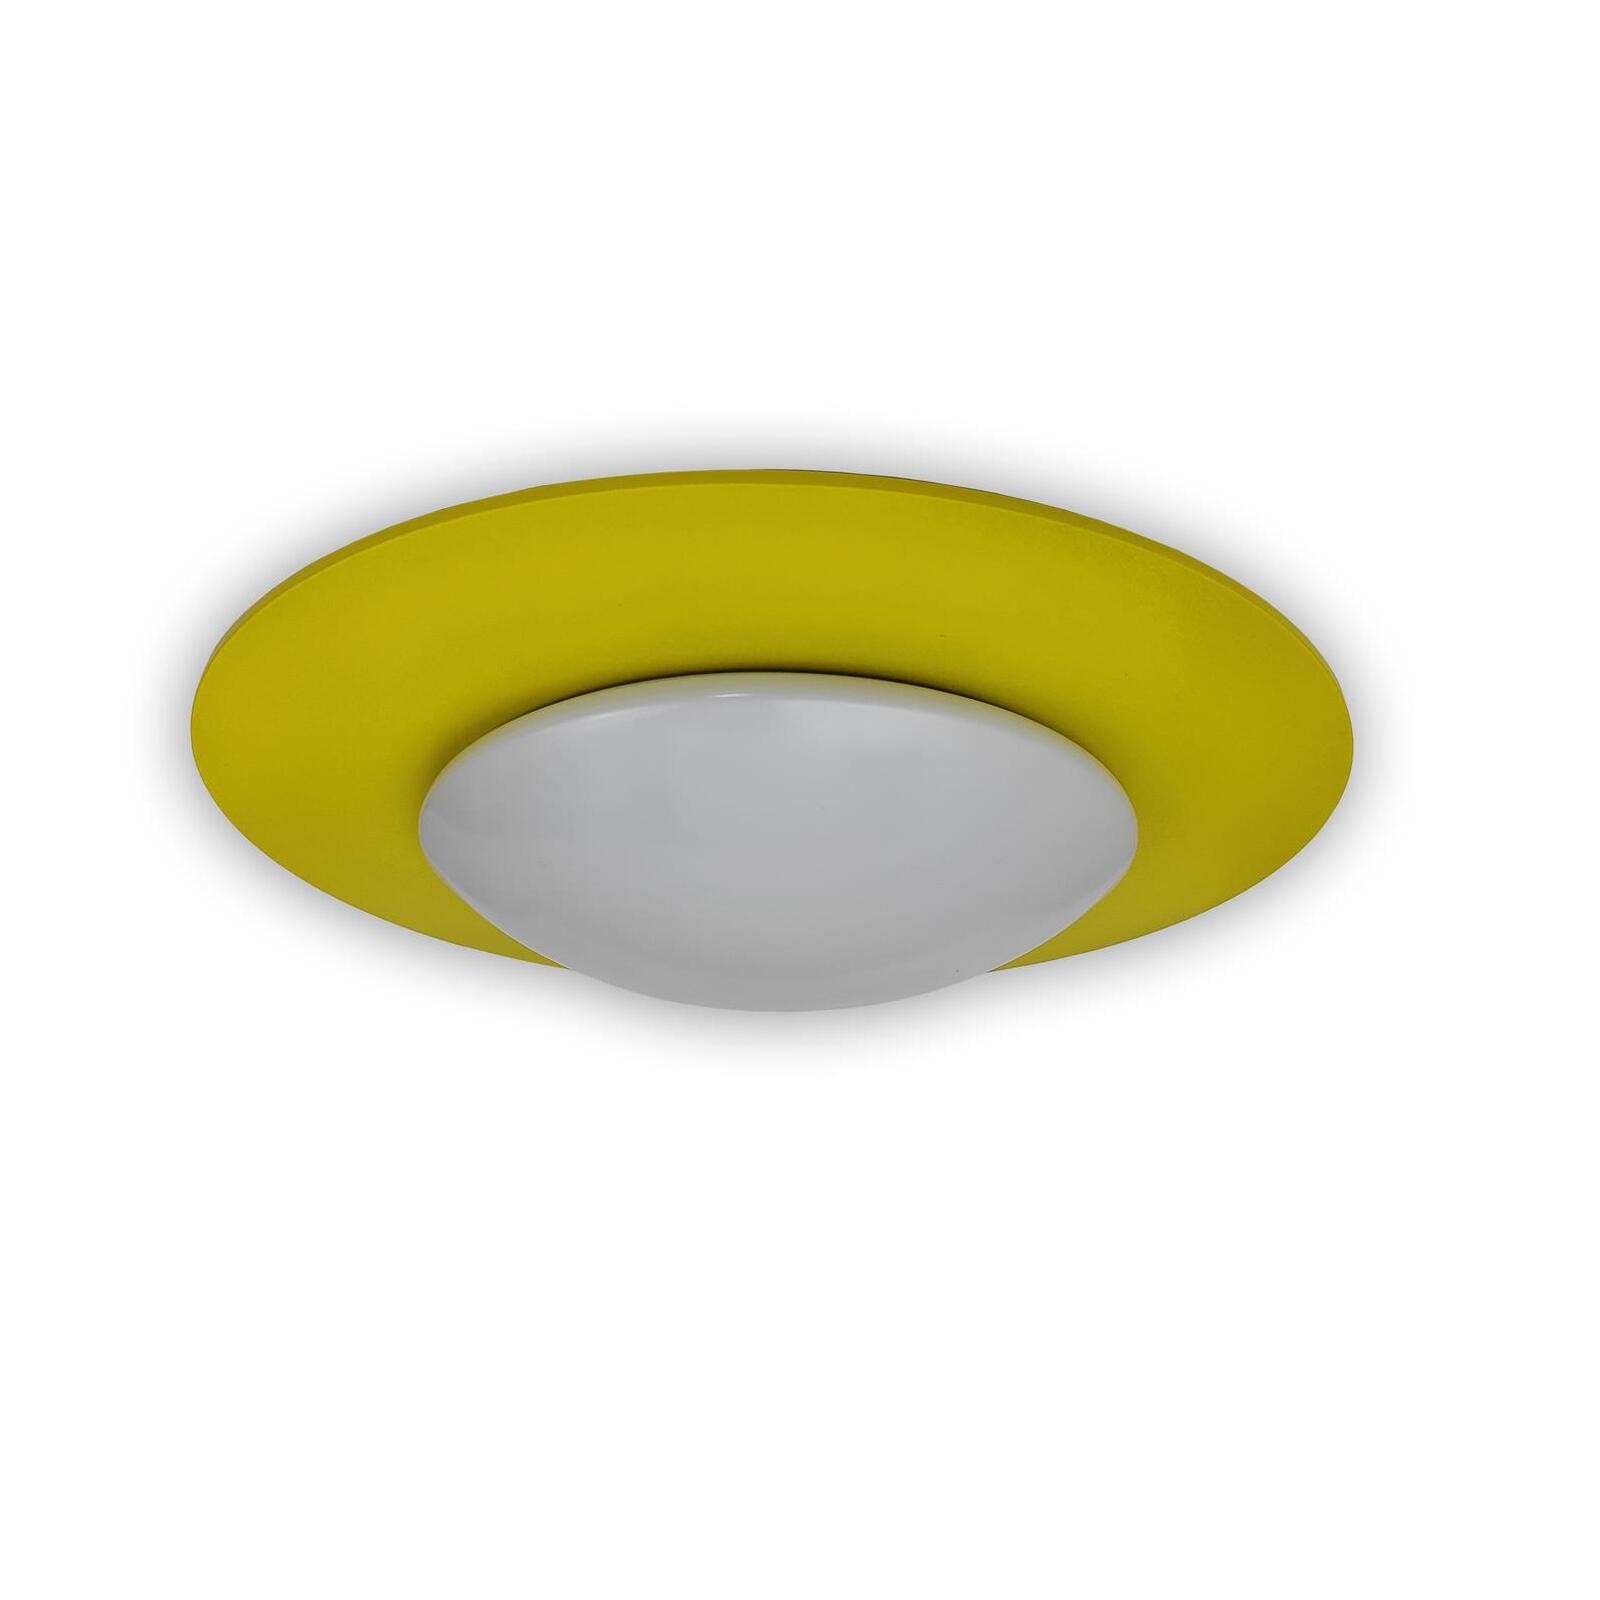 Deckenschale Saturn, Sonnengelb - Lampen & Leuchten Onlineshop